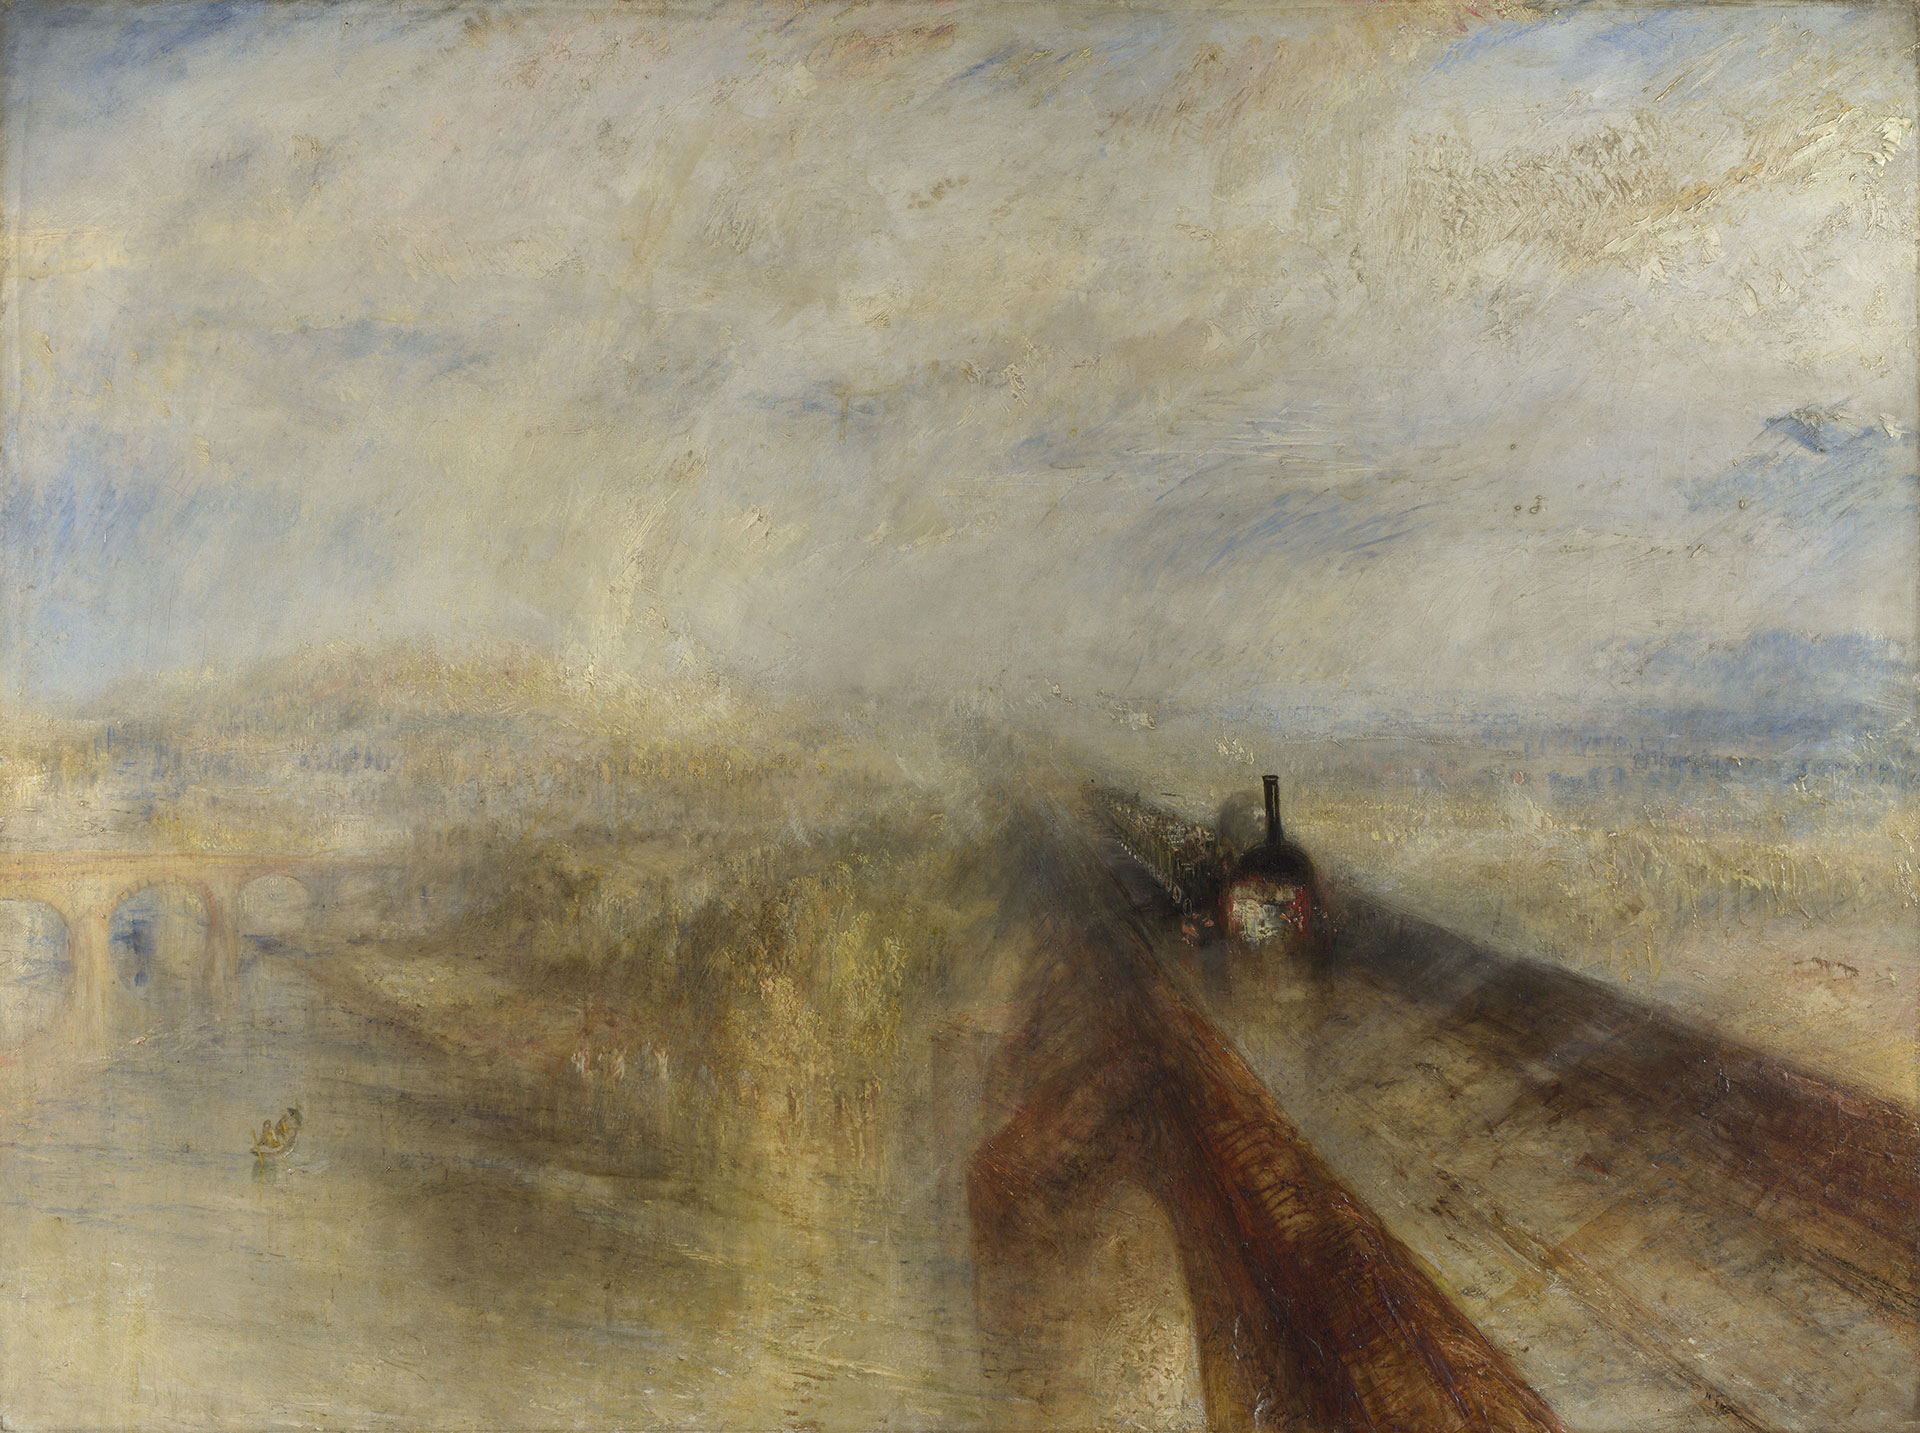 "Lluvia, vapor y velocidad" (1844) de Turner. Esta obra se encuentra en la National Gallery, uno de los museos que Glantz visitaba regularmente cuando vivía en Londres.